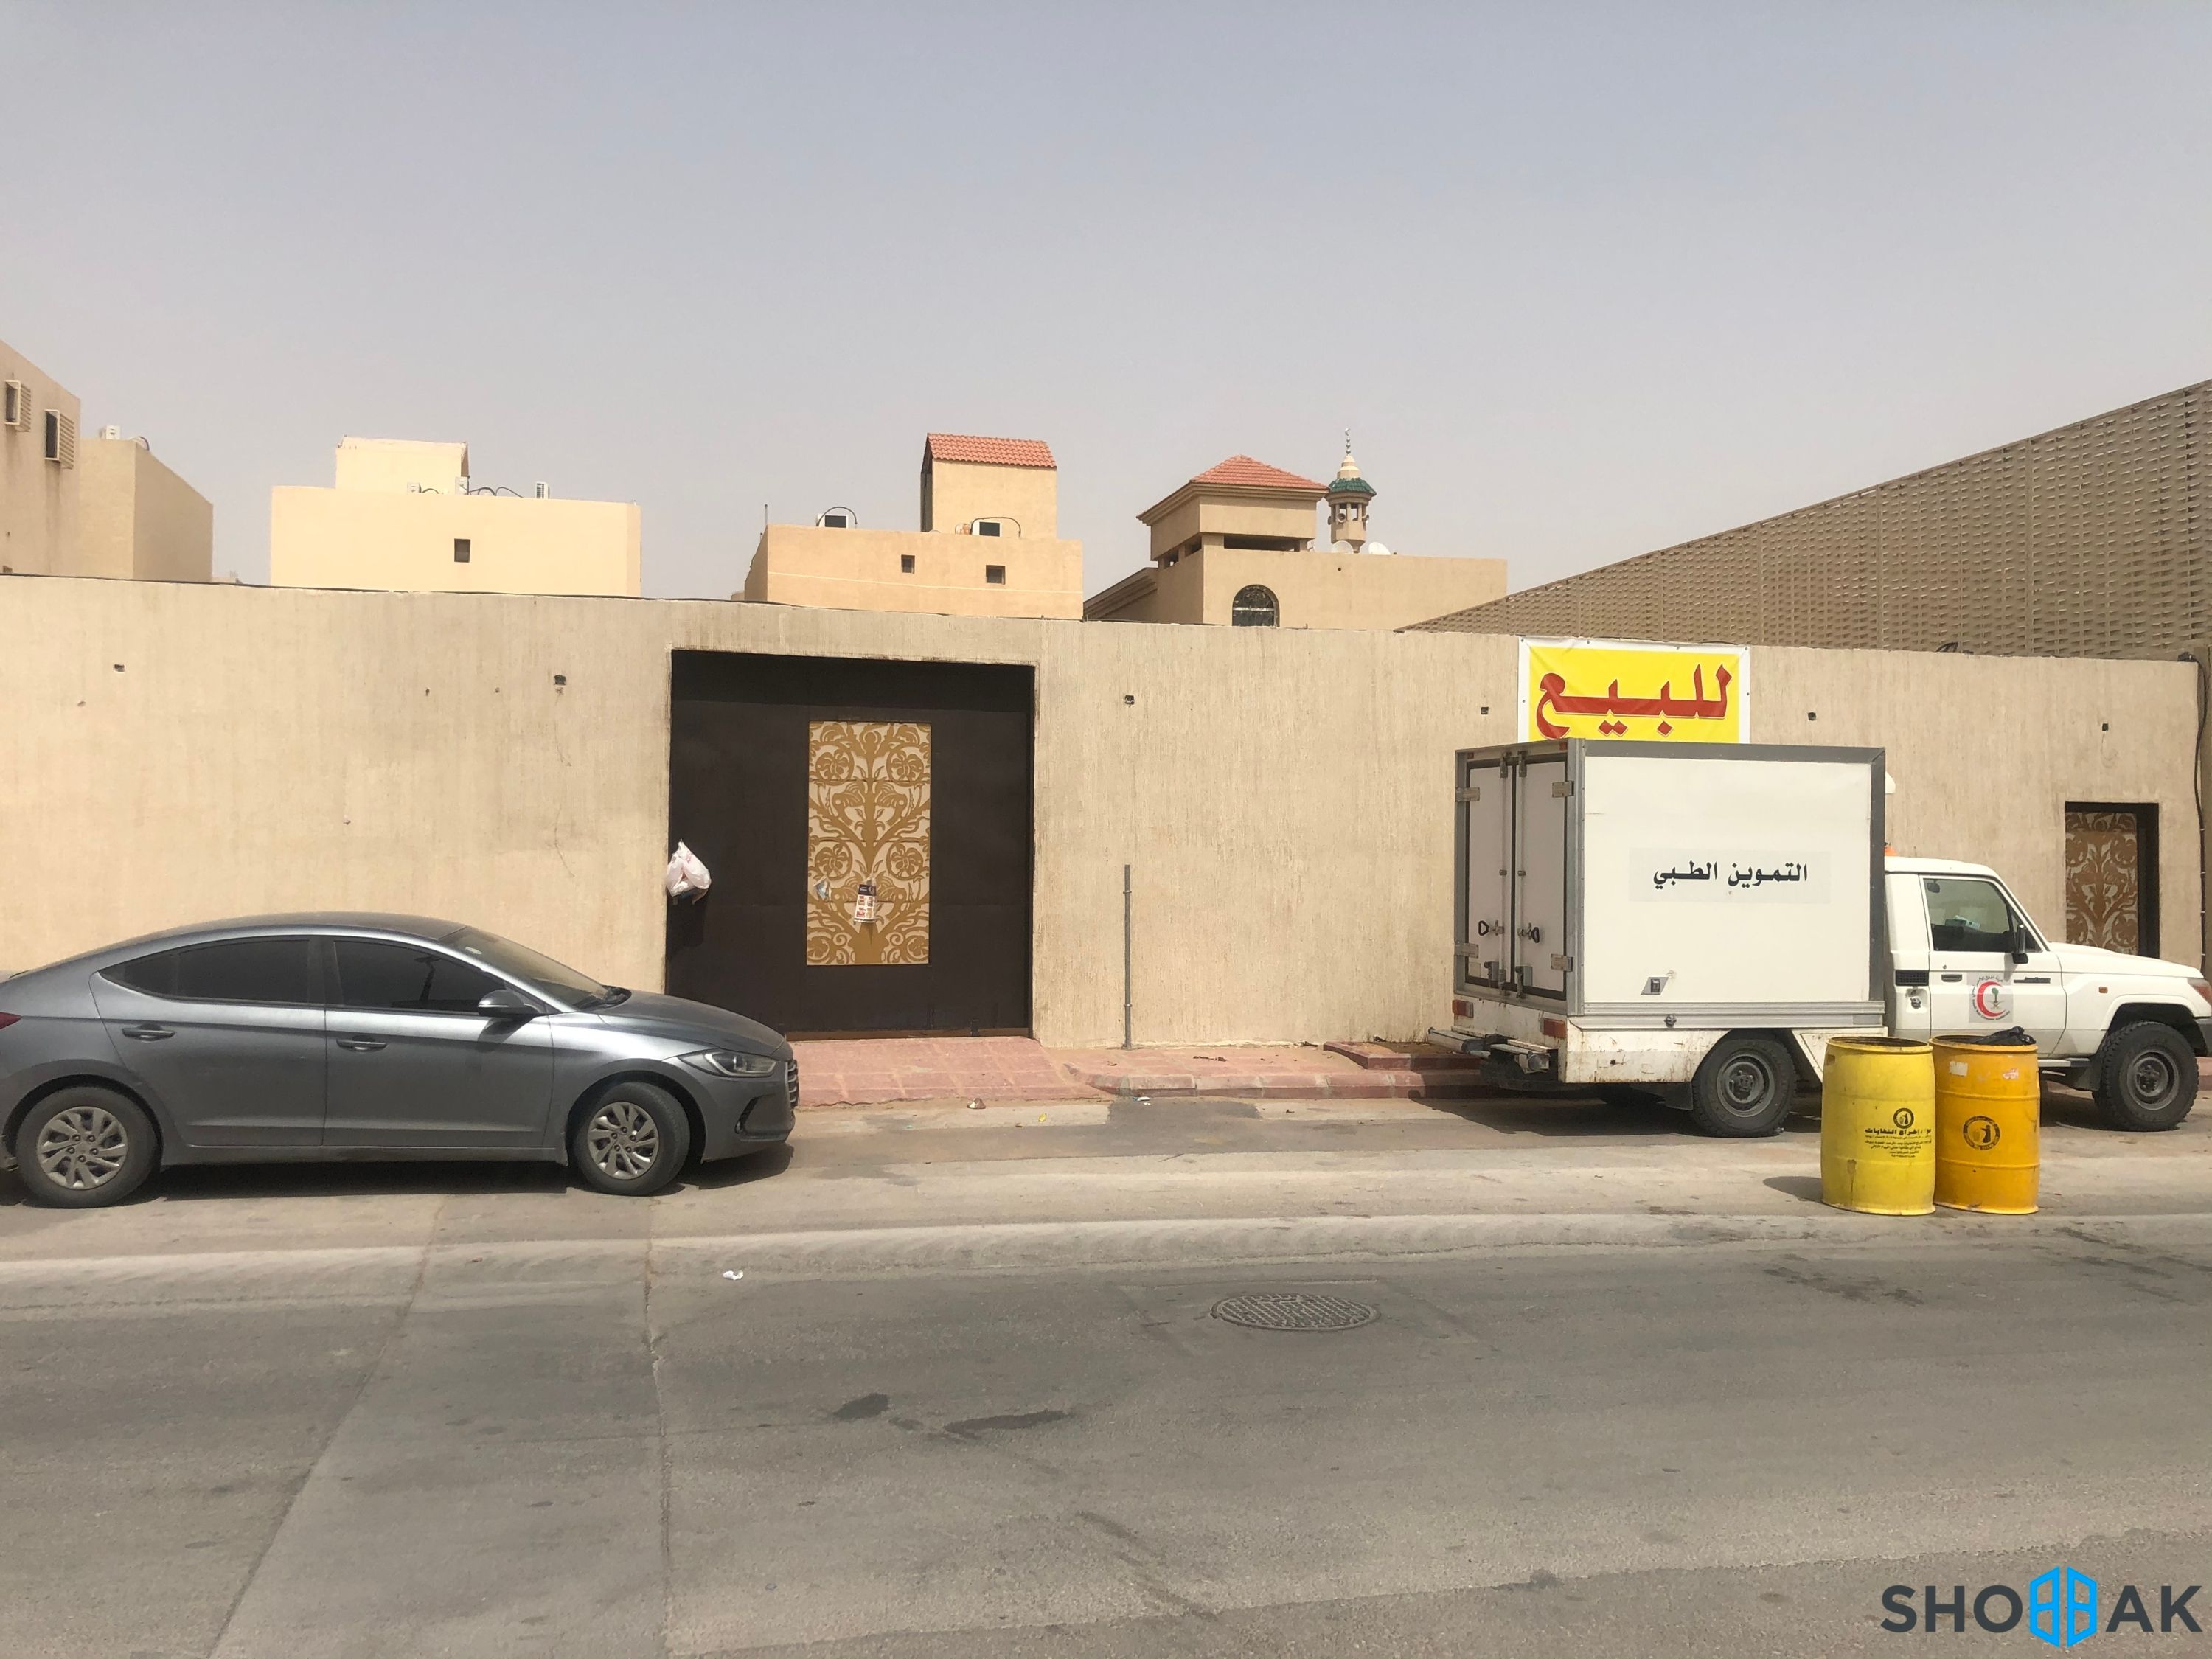 الرياض - حي الفيحاء - شارع نوح بن هبيرة  Shobbak Saudi Arabia